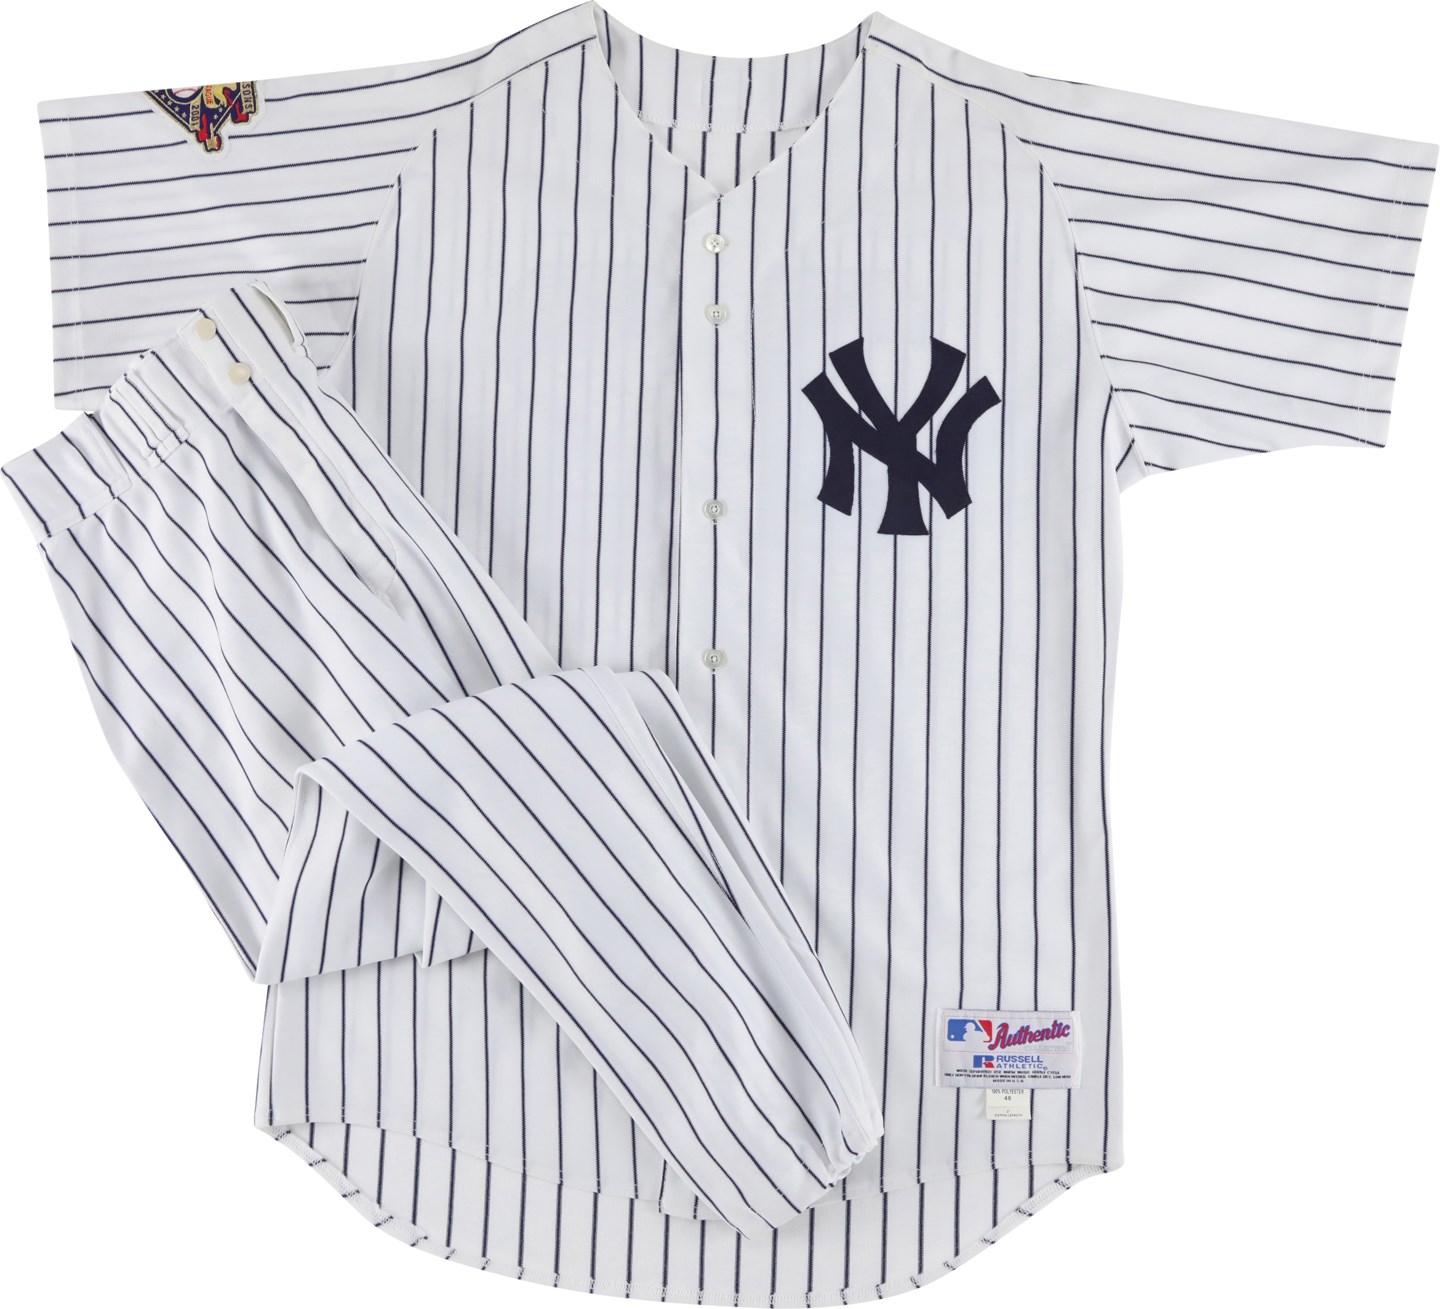 Baseball Equipment - 2001 Alfonso Soriano New York Yankees Game Worn "Rookie" Uniform